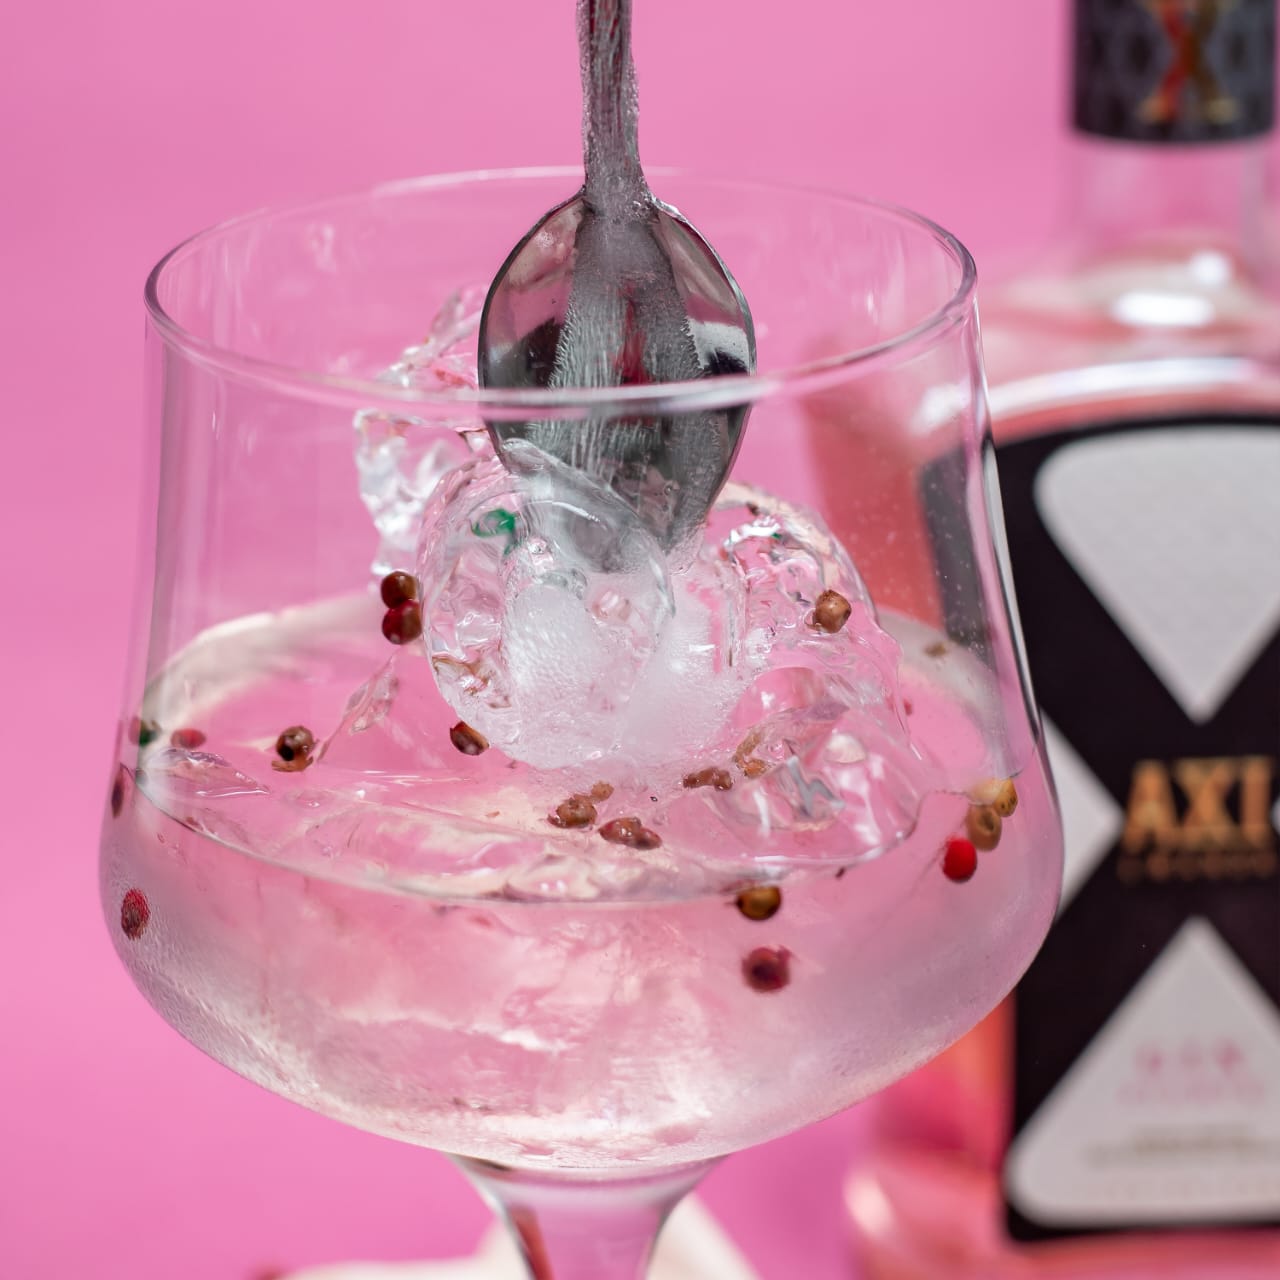 Axi Gin serviert im Glas mit Eiswürfeln und Gewürzen auf rosa Hintergrund.